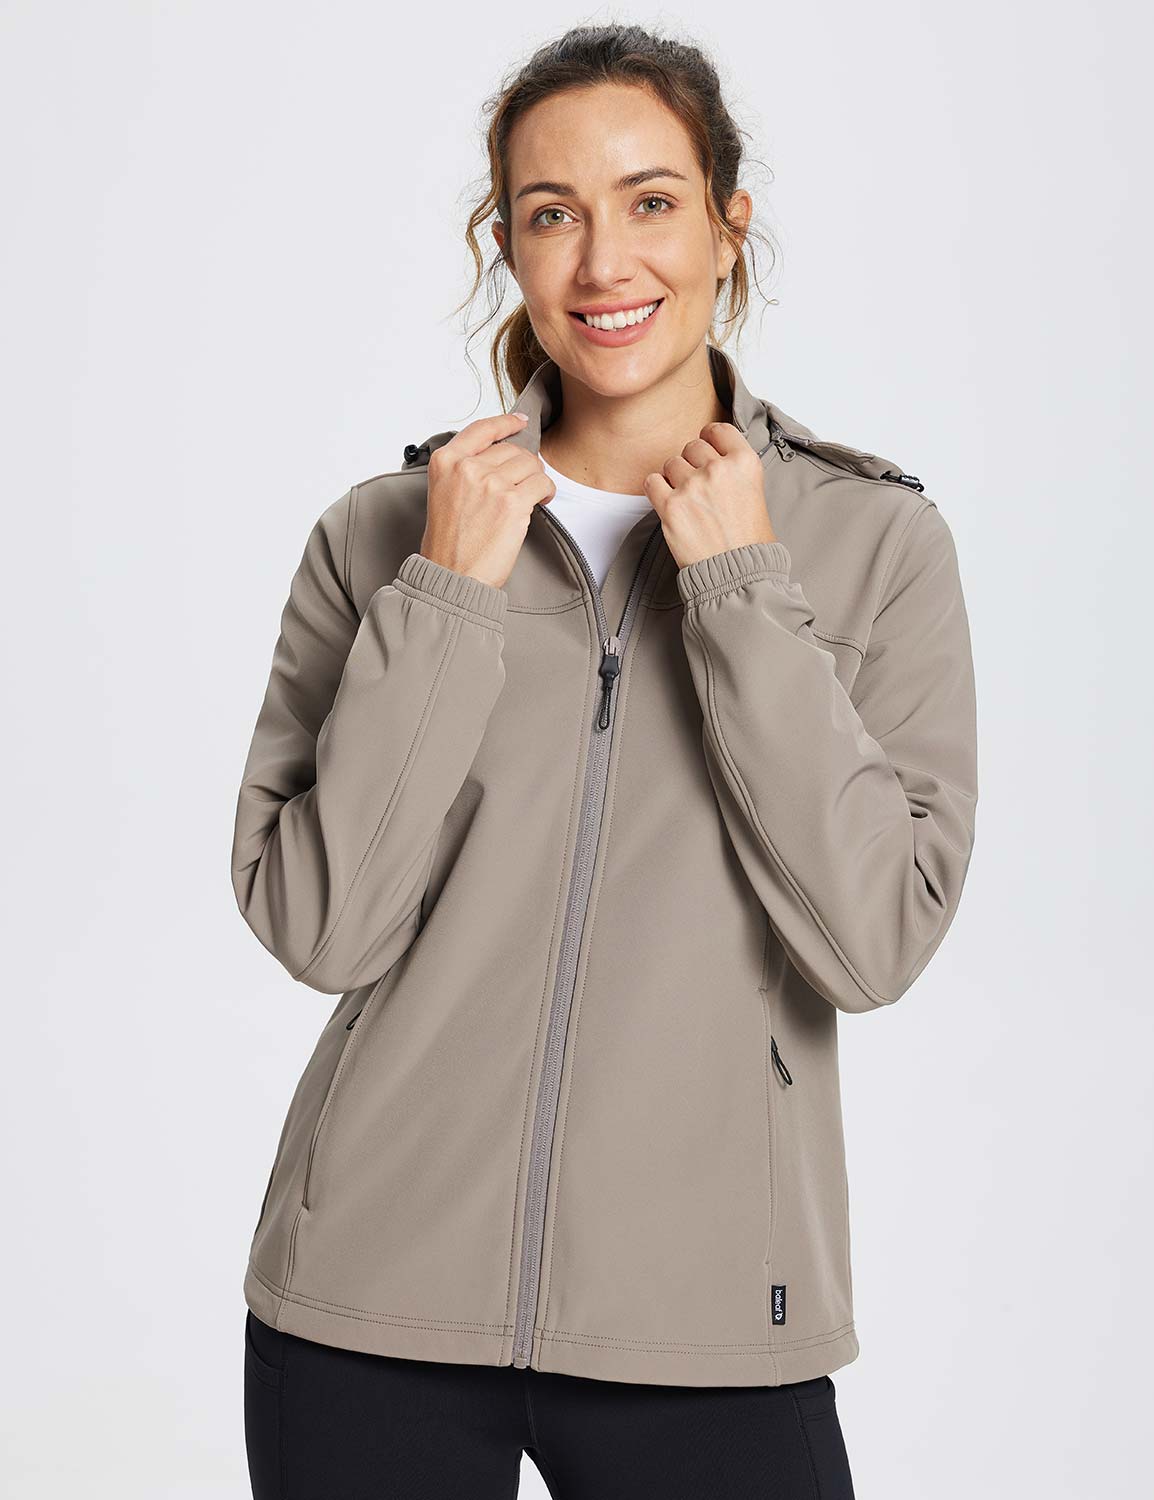 Baleaf Women's Water-Resistant Full-Zip Hooded Softshell Jacket